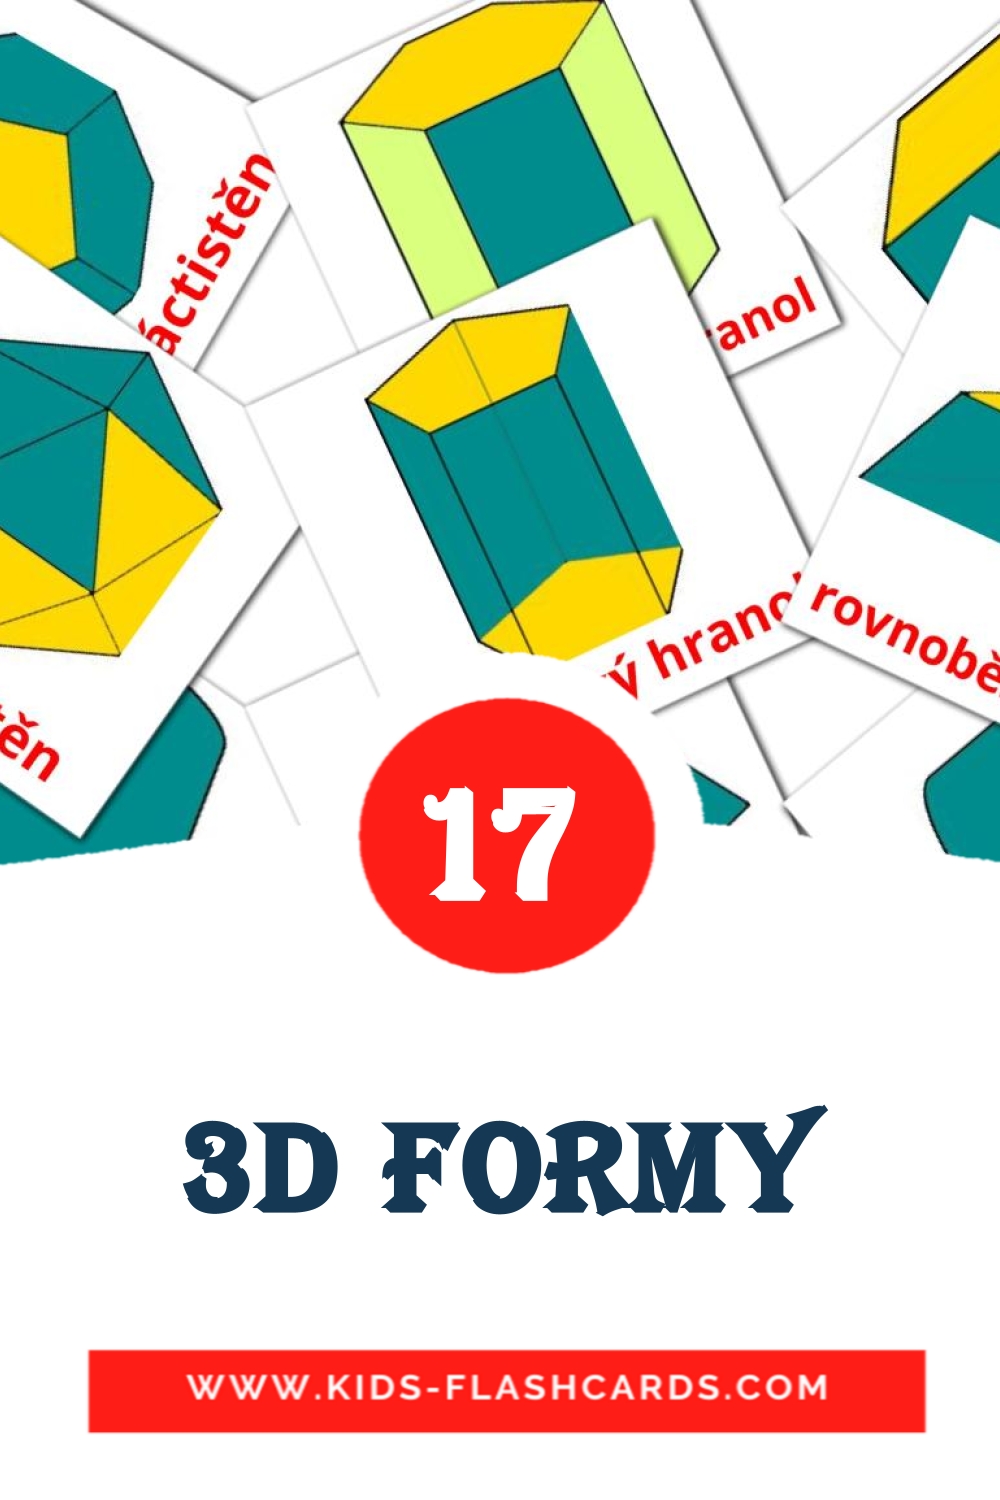 3D formy на чешском для Детского Сада (17 карточек)